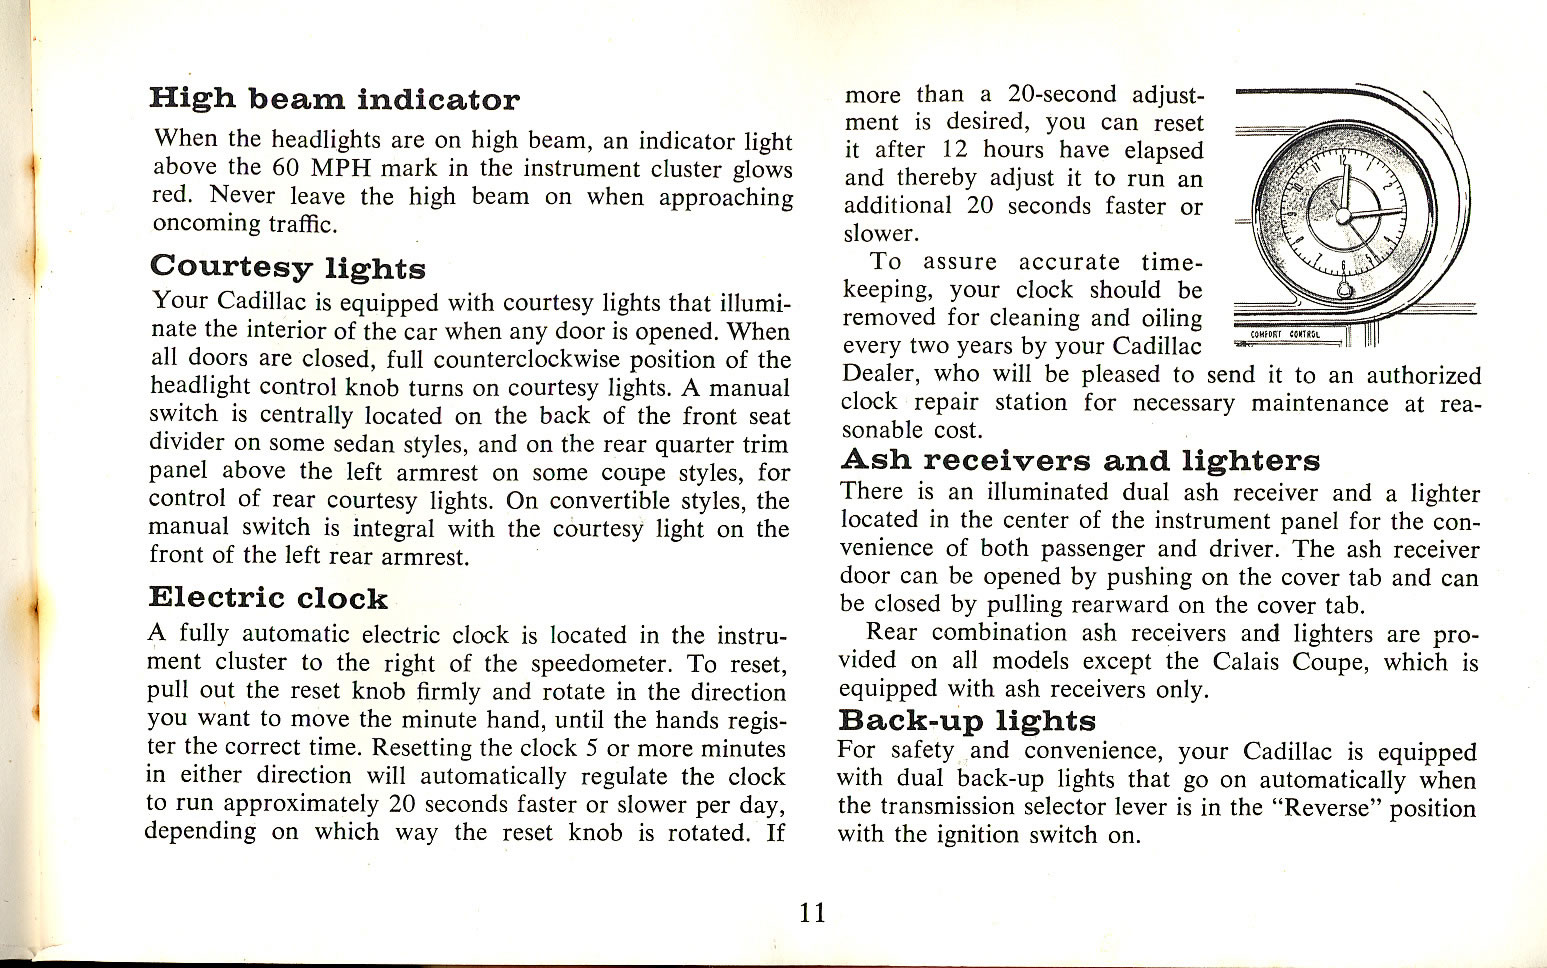 1965 Cadillac Manual-11